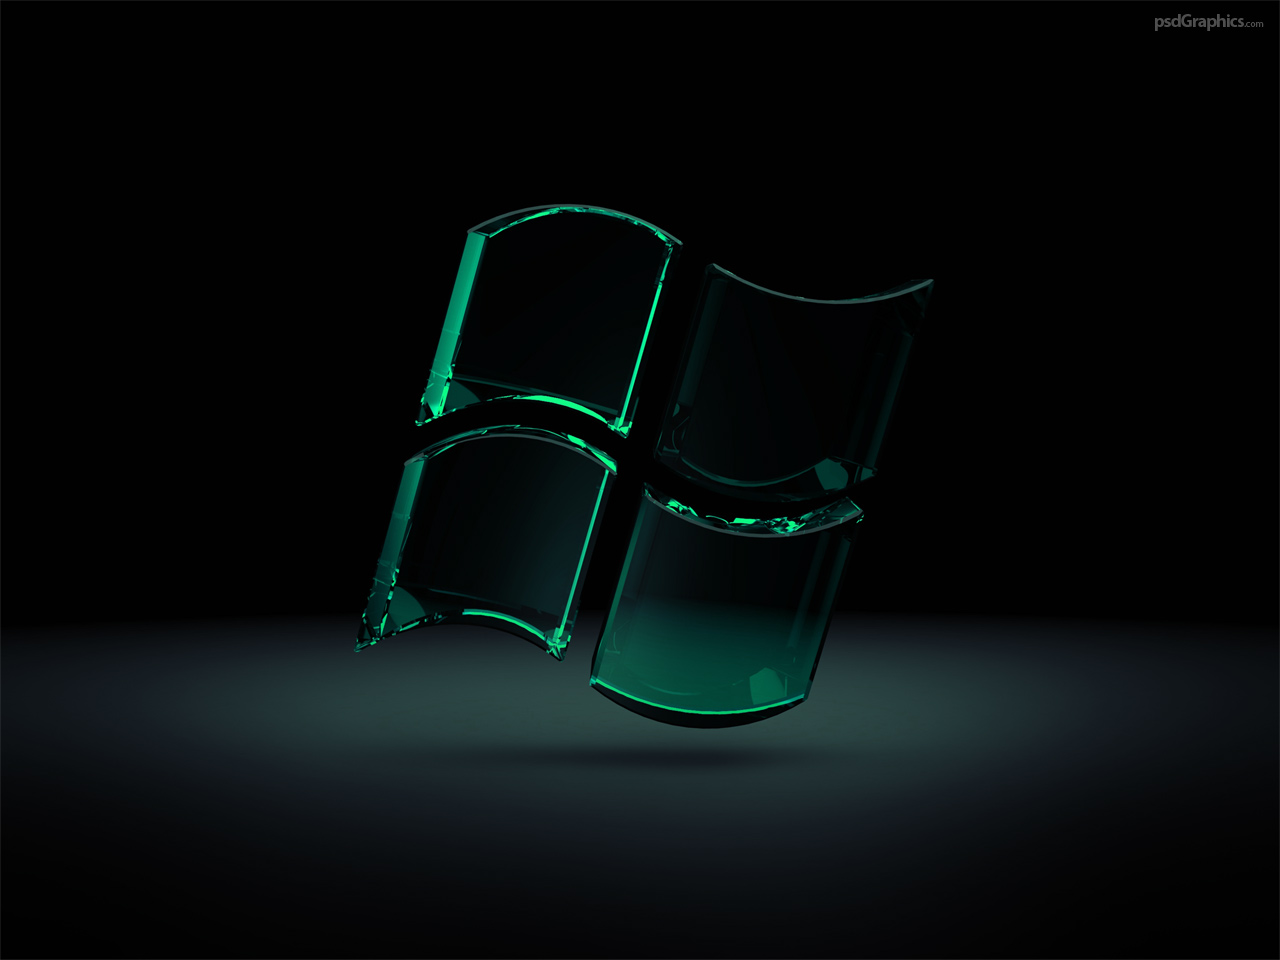 hd wallpaper hd,verde,materiale trasparente,fotografia di still life,sedia,bicchiere